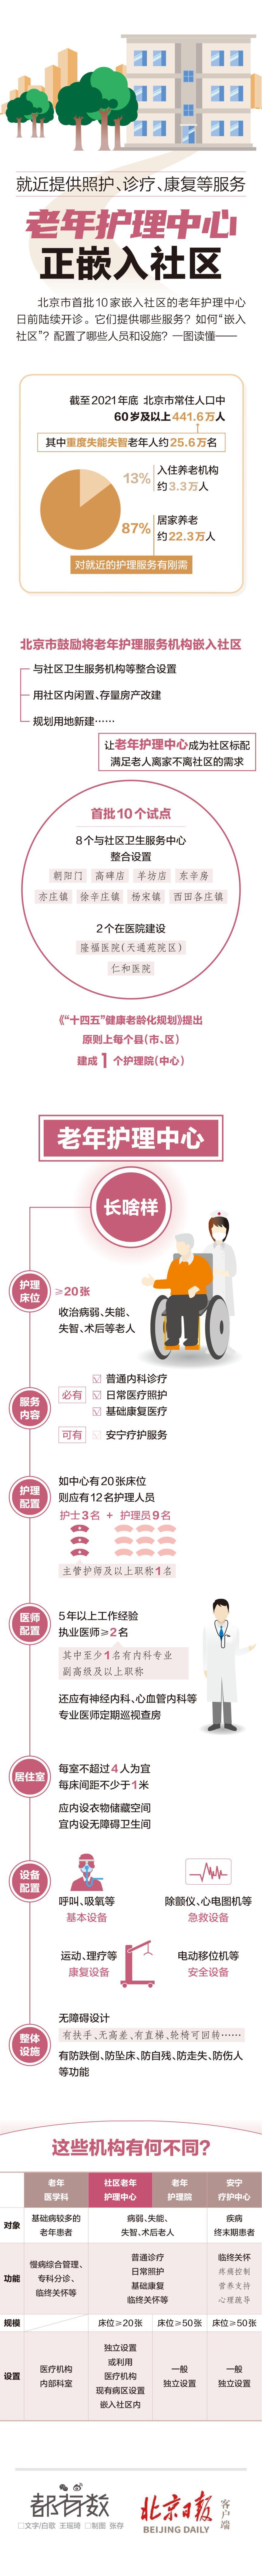 一图读懂 | 北京首批10家嵌入社区的老年护理中心长啥样
？